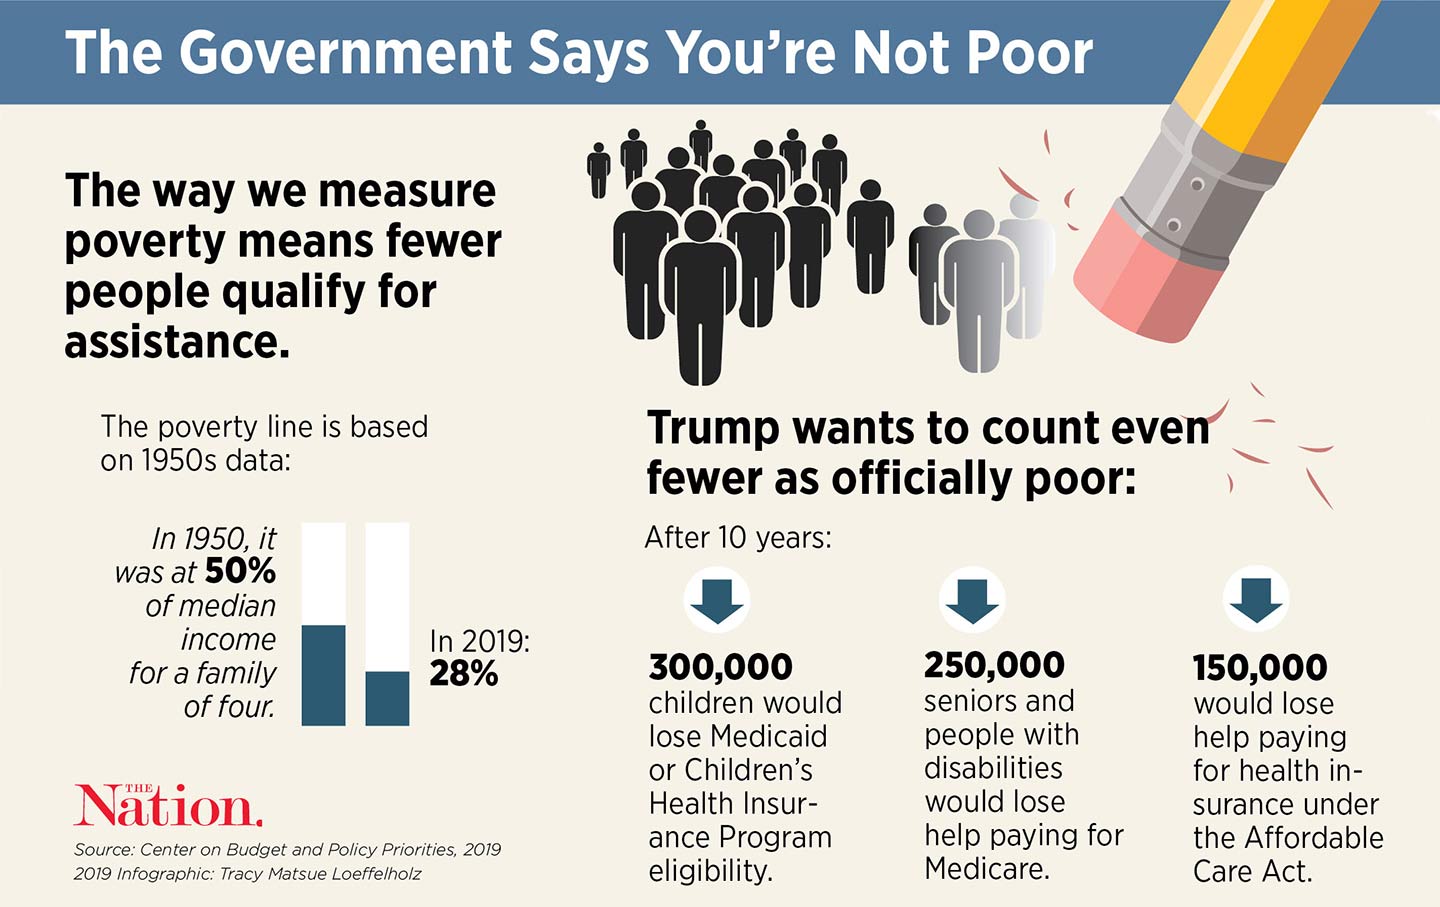 Trump’s Plan to Deny Benefits: Pretend People Aren’t Poor